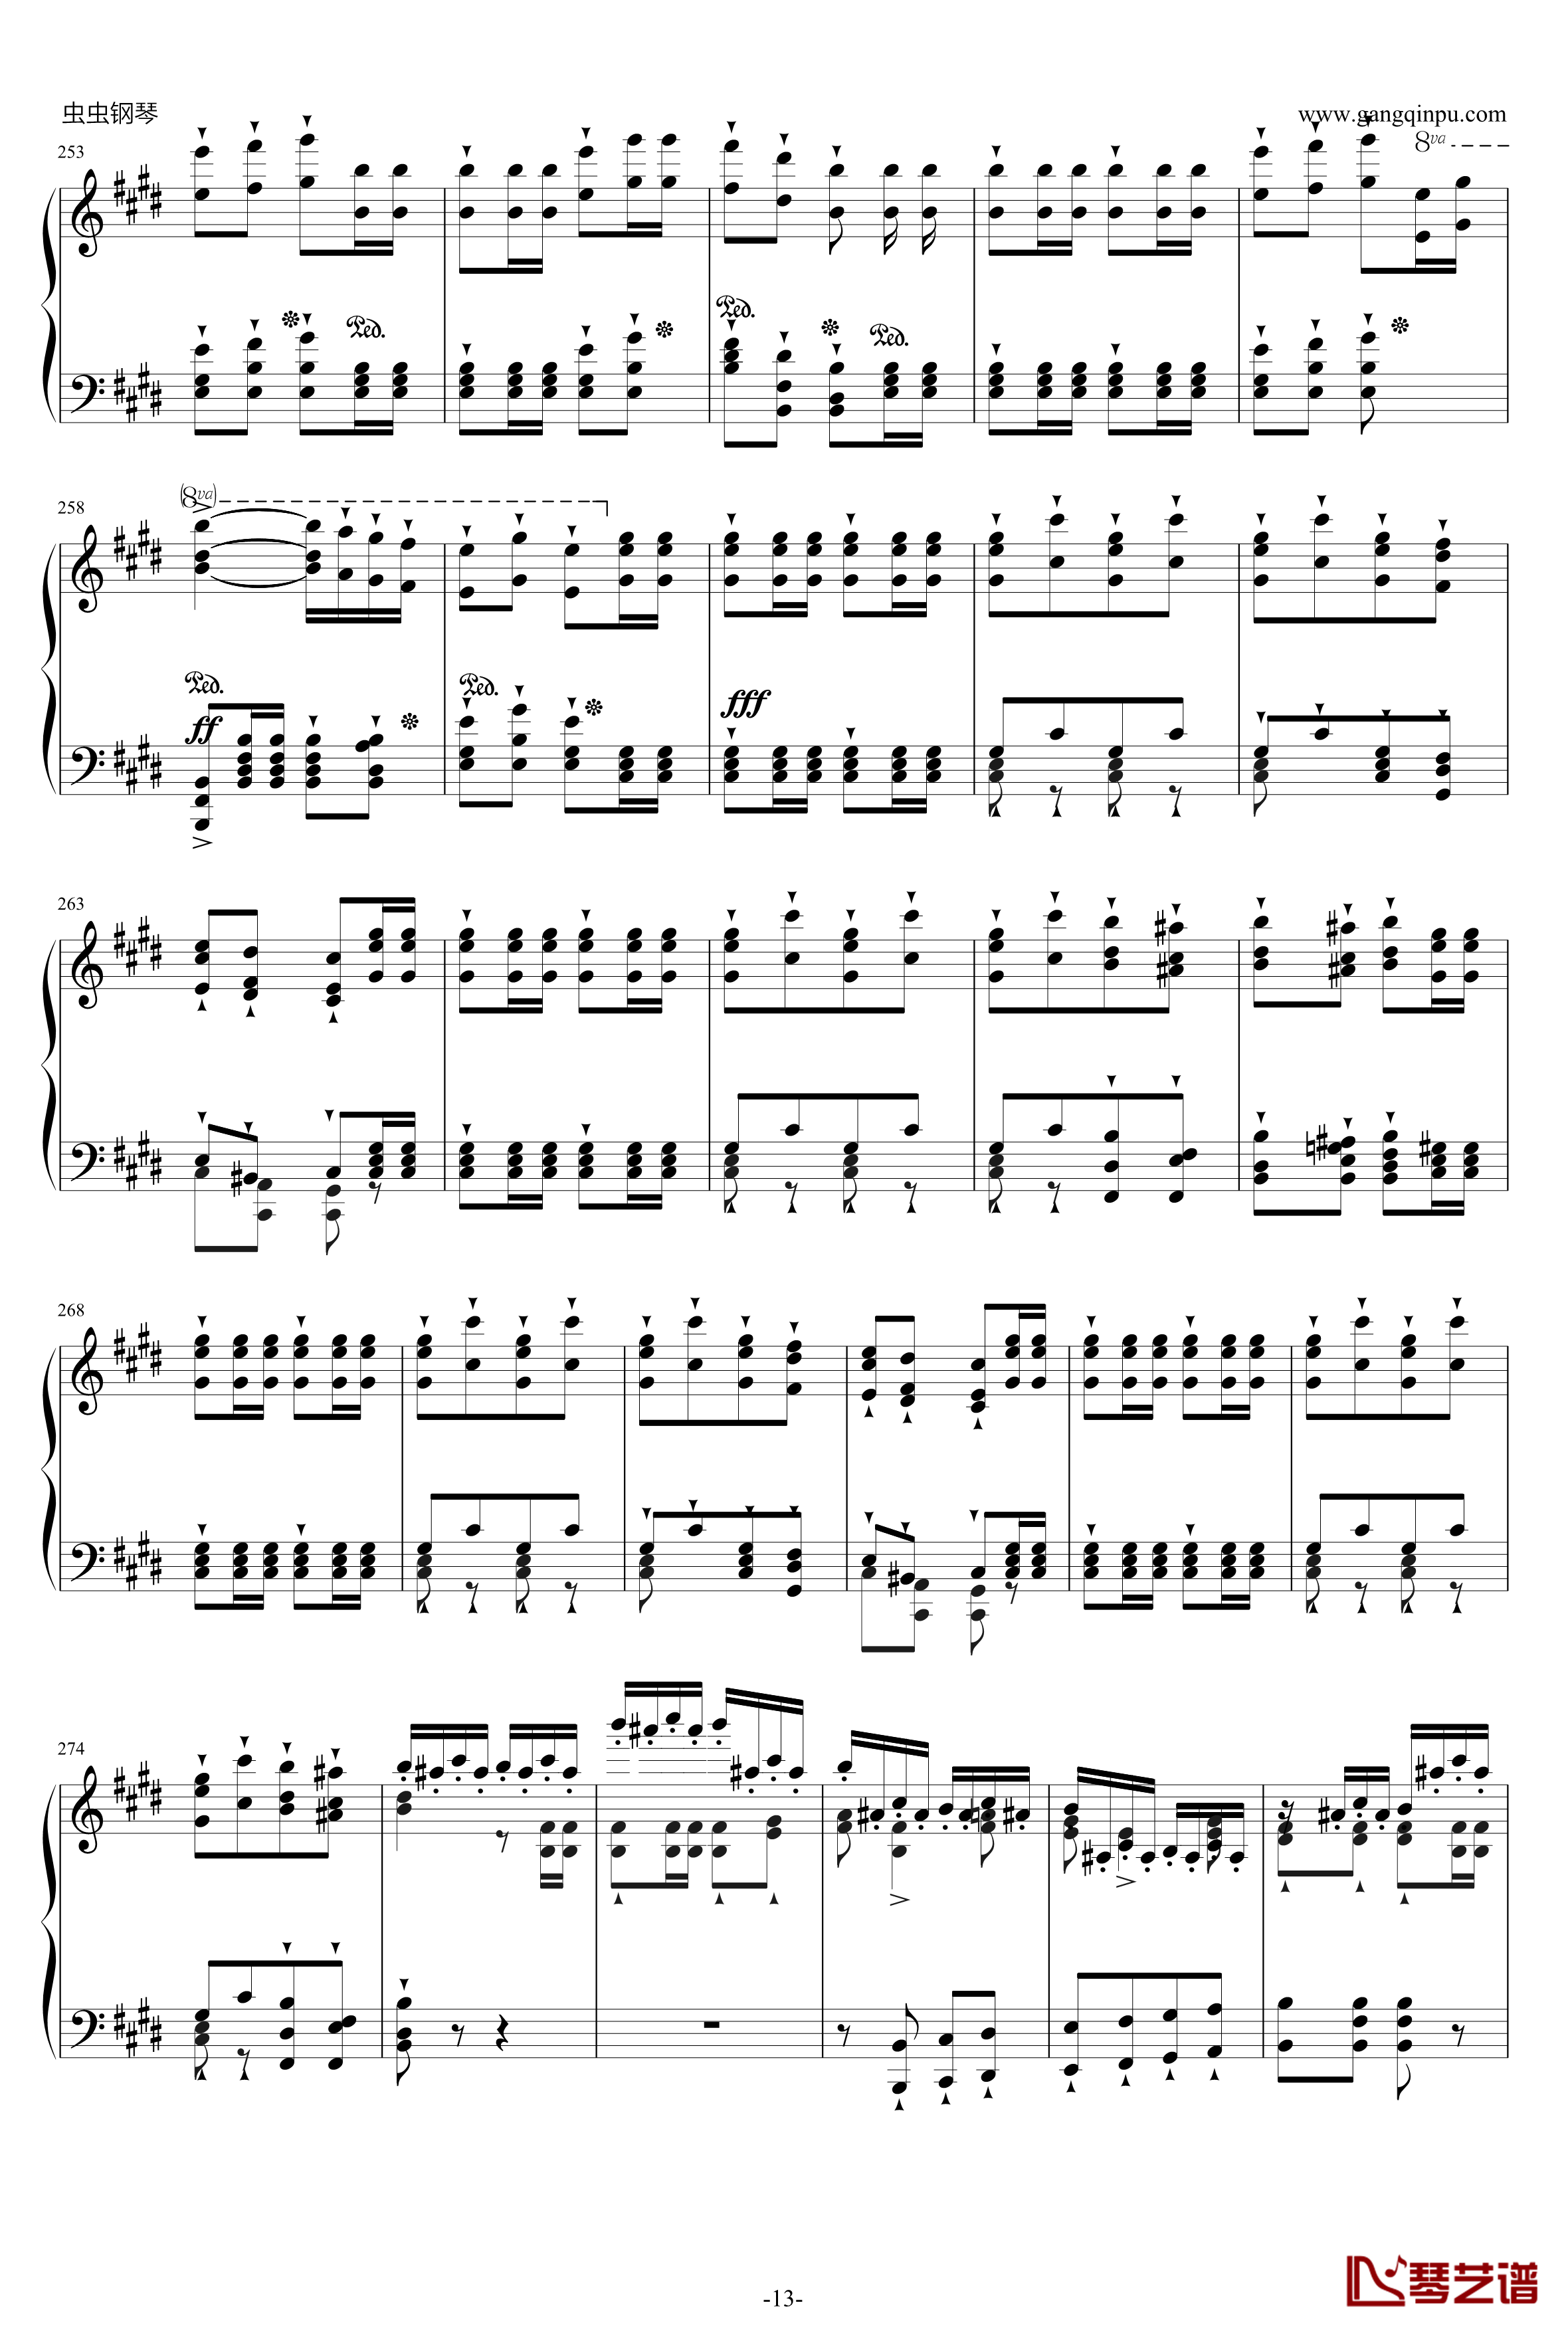 威廉·退尔序曲钢琴谱-李斯特S.55213